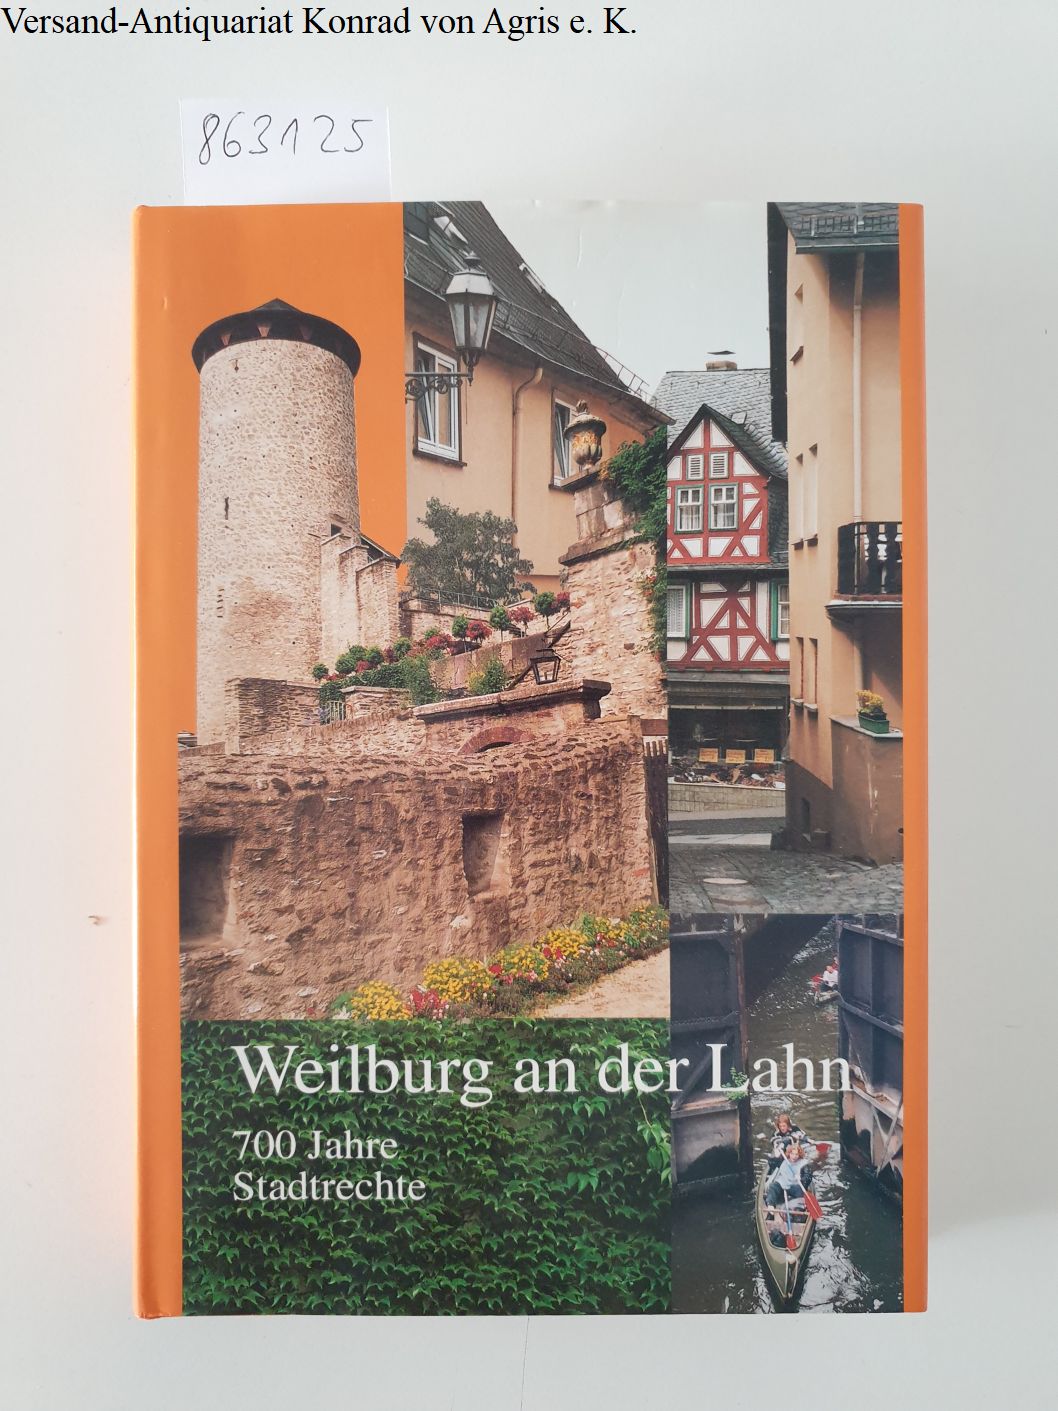 Weilburg an der Lahn - 700 Jahre Stadtrechte, 1295 - 1995 - Magistrat der Stadt Weilburg (Hrsg.)